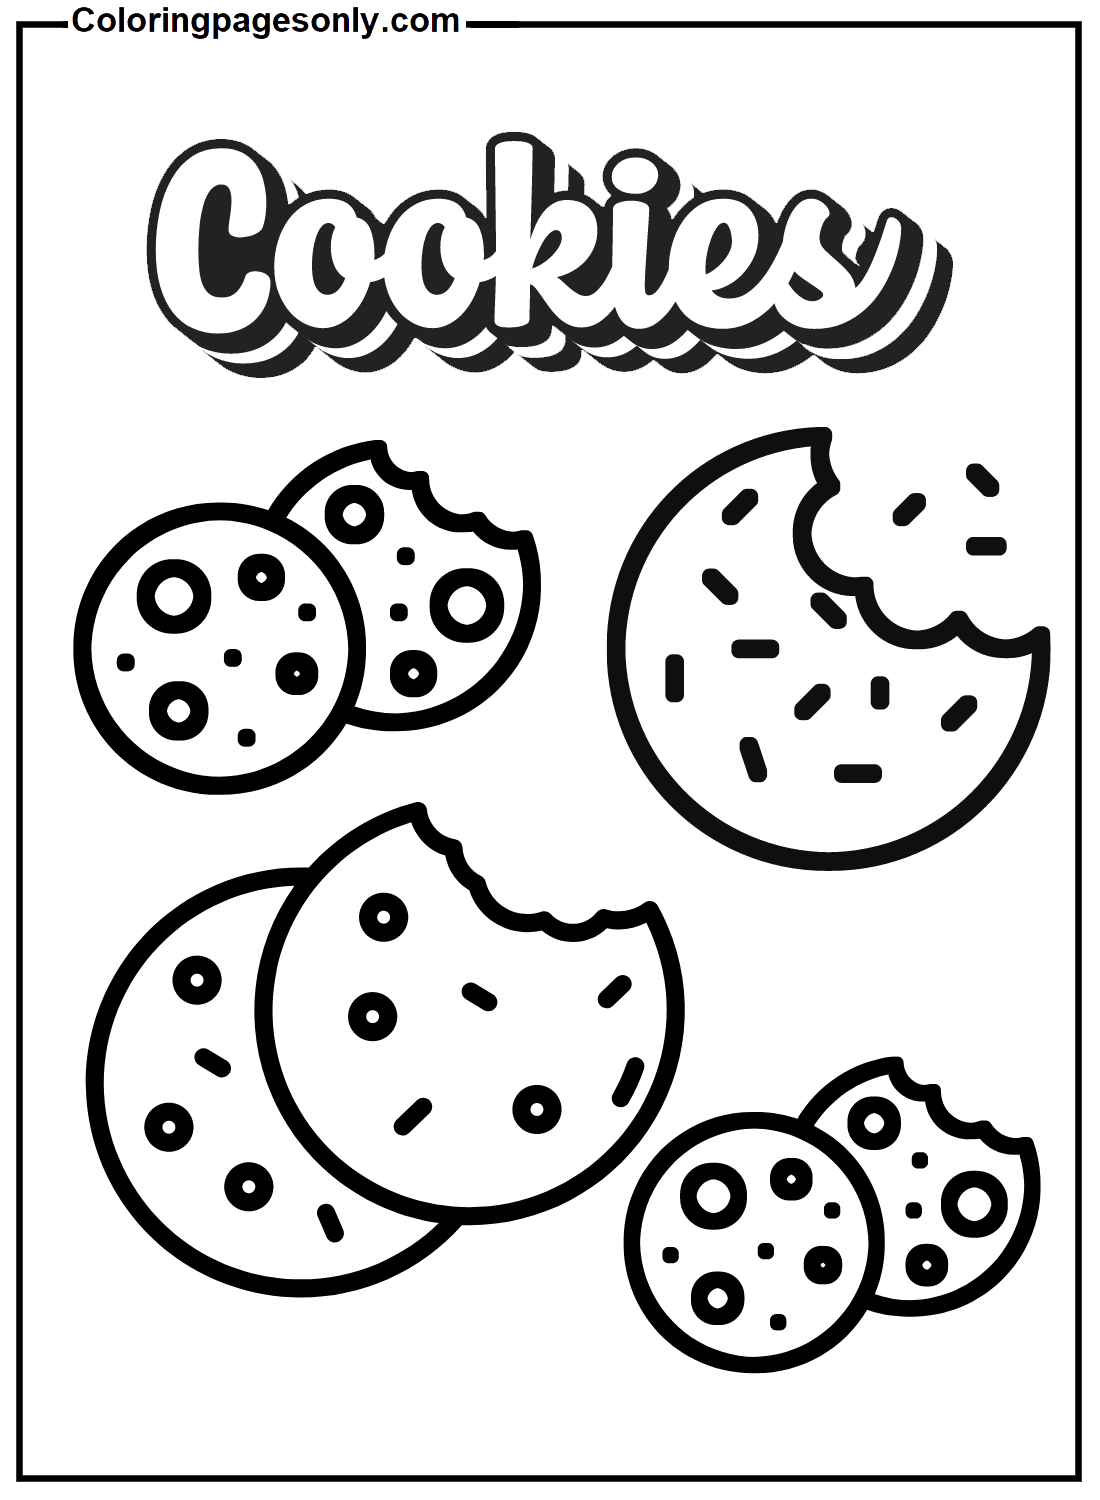 Cookie kleurenvel van Cookie